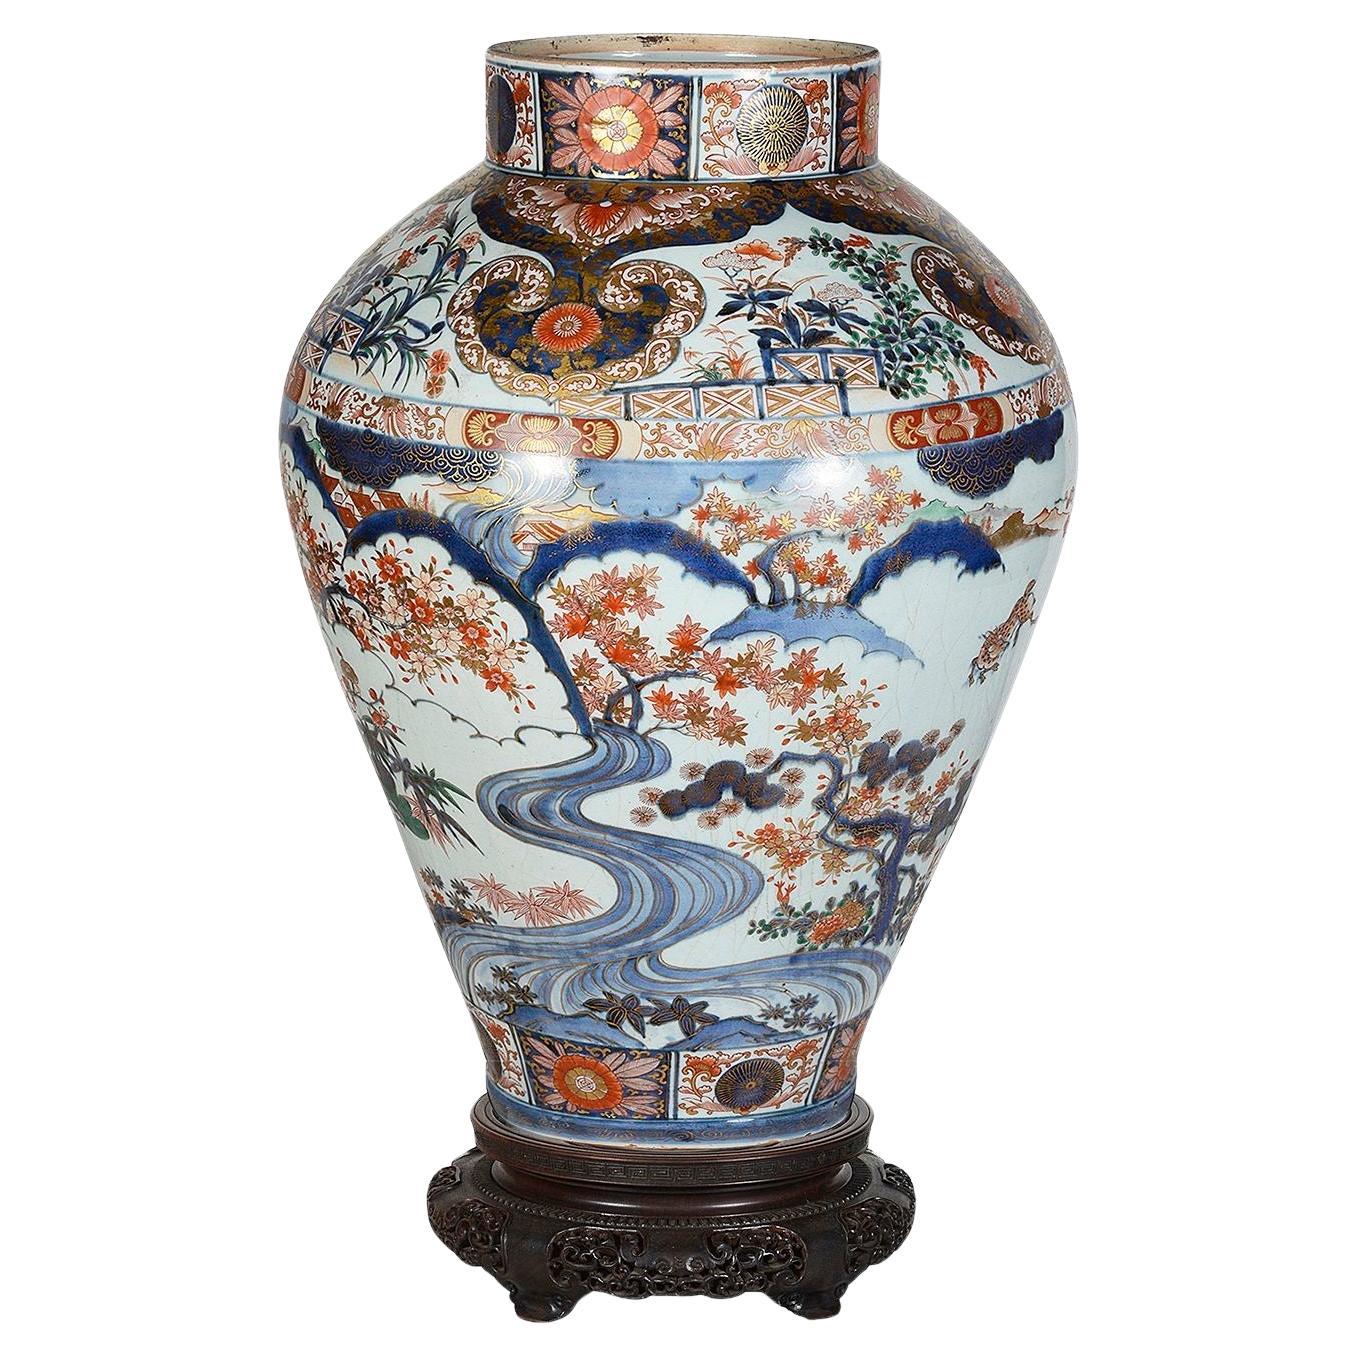 Eine spektakuläre japanische Arita-Imari-Vase aus dem 18. Jahrhundert auf einem Ständer. Sie haben eine wunderbare, kräftige Färbung. Mit wunderschönem Scroll-Motiv und Blattwerkdekor. Szenen von Hirschen, die unter blühenden Bäumen fressen, mit